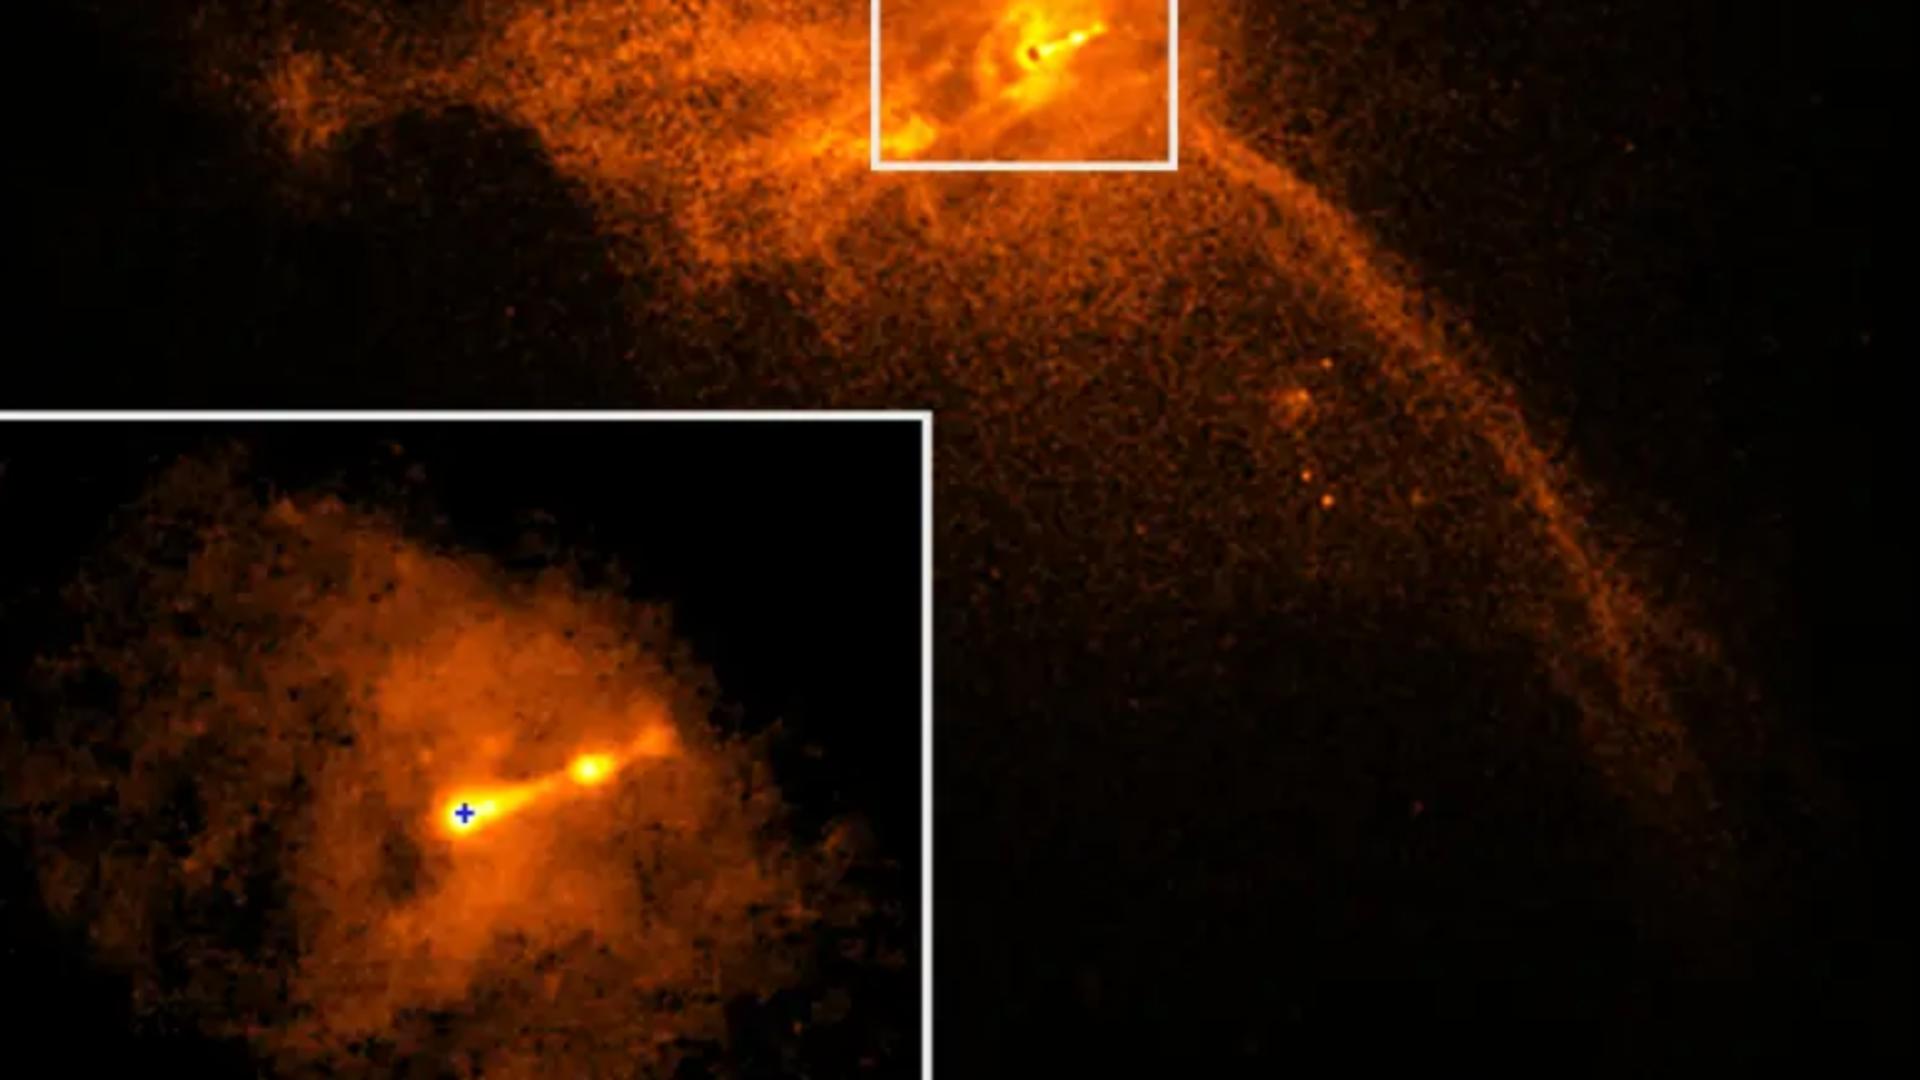  In imagine se poate observa plasma aruncată de Gaura Neagră FOTO: NASA X CHANDRA